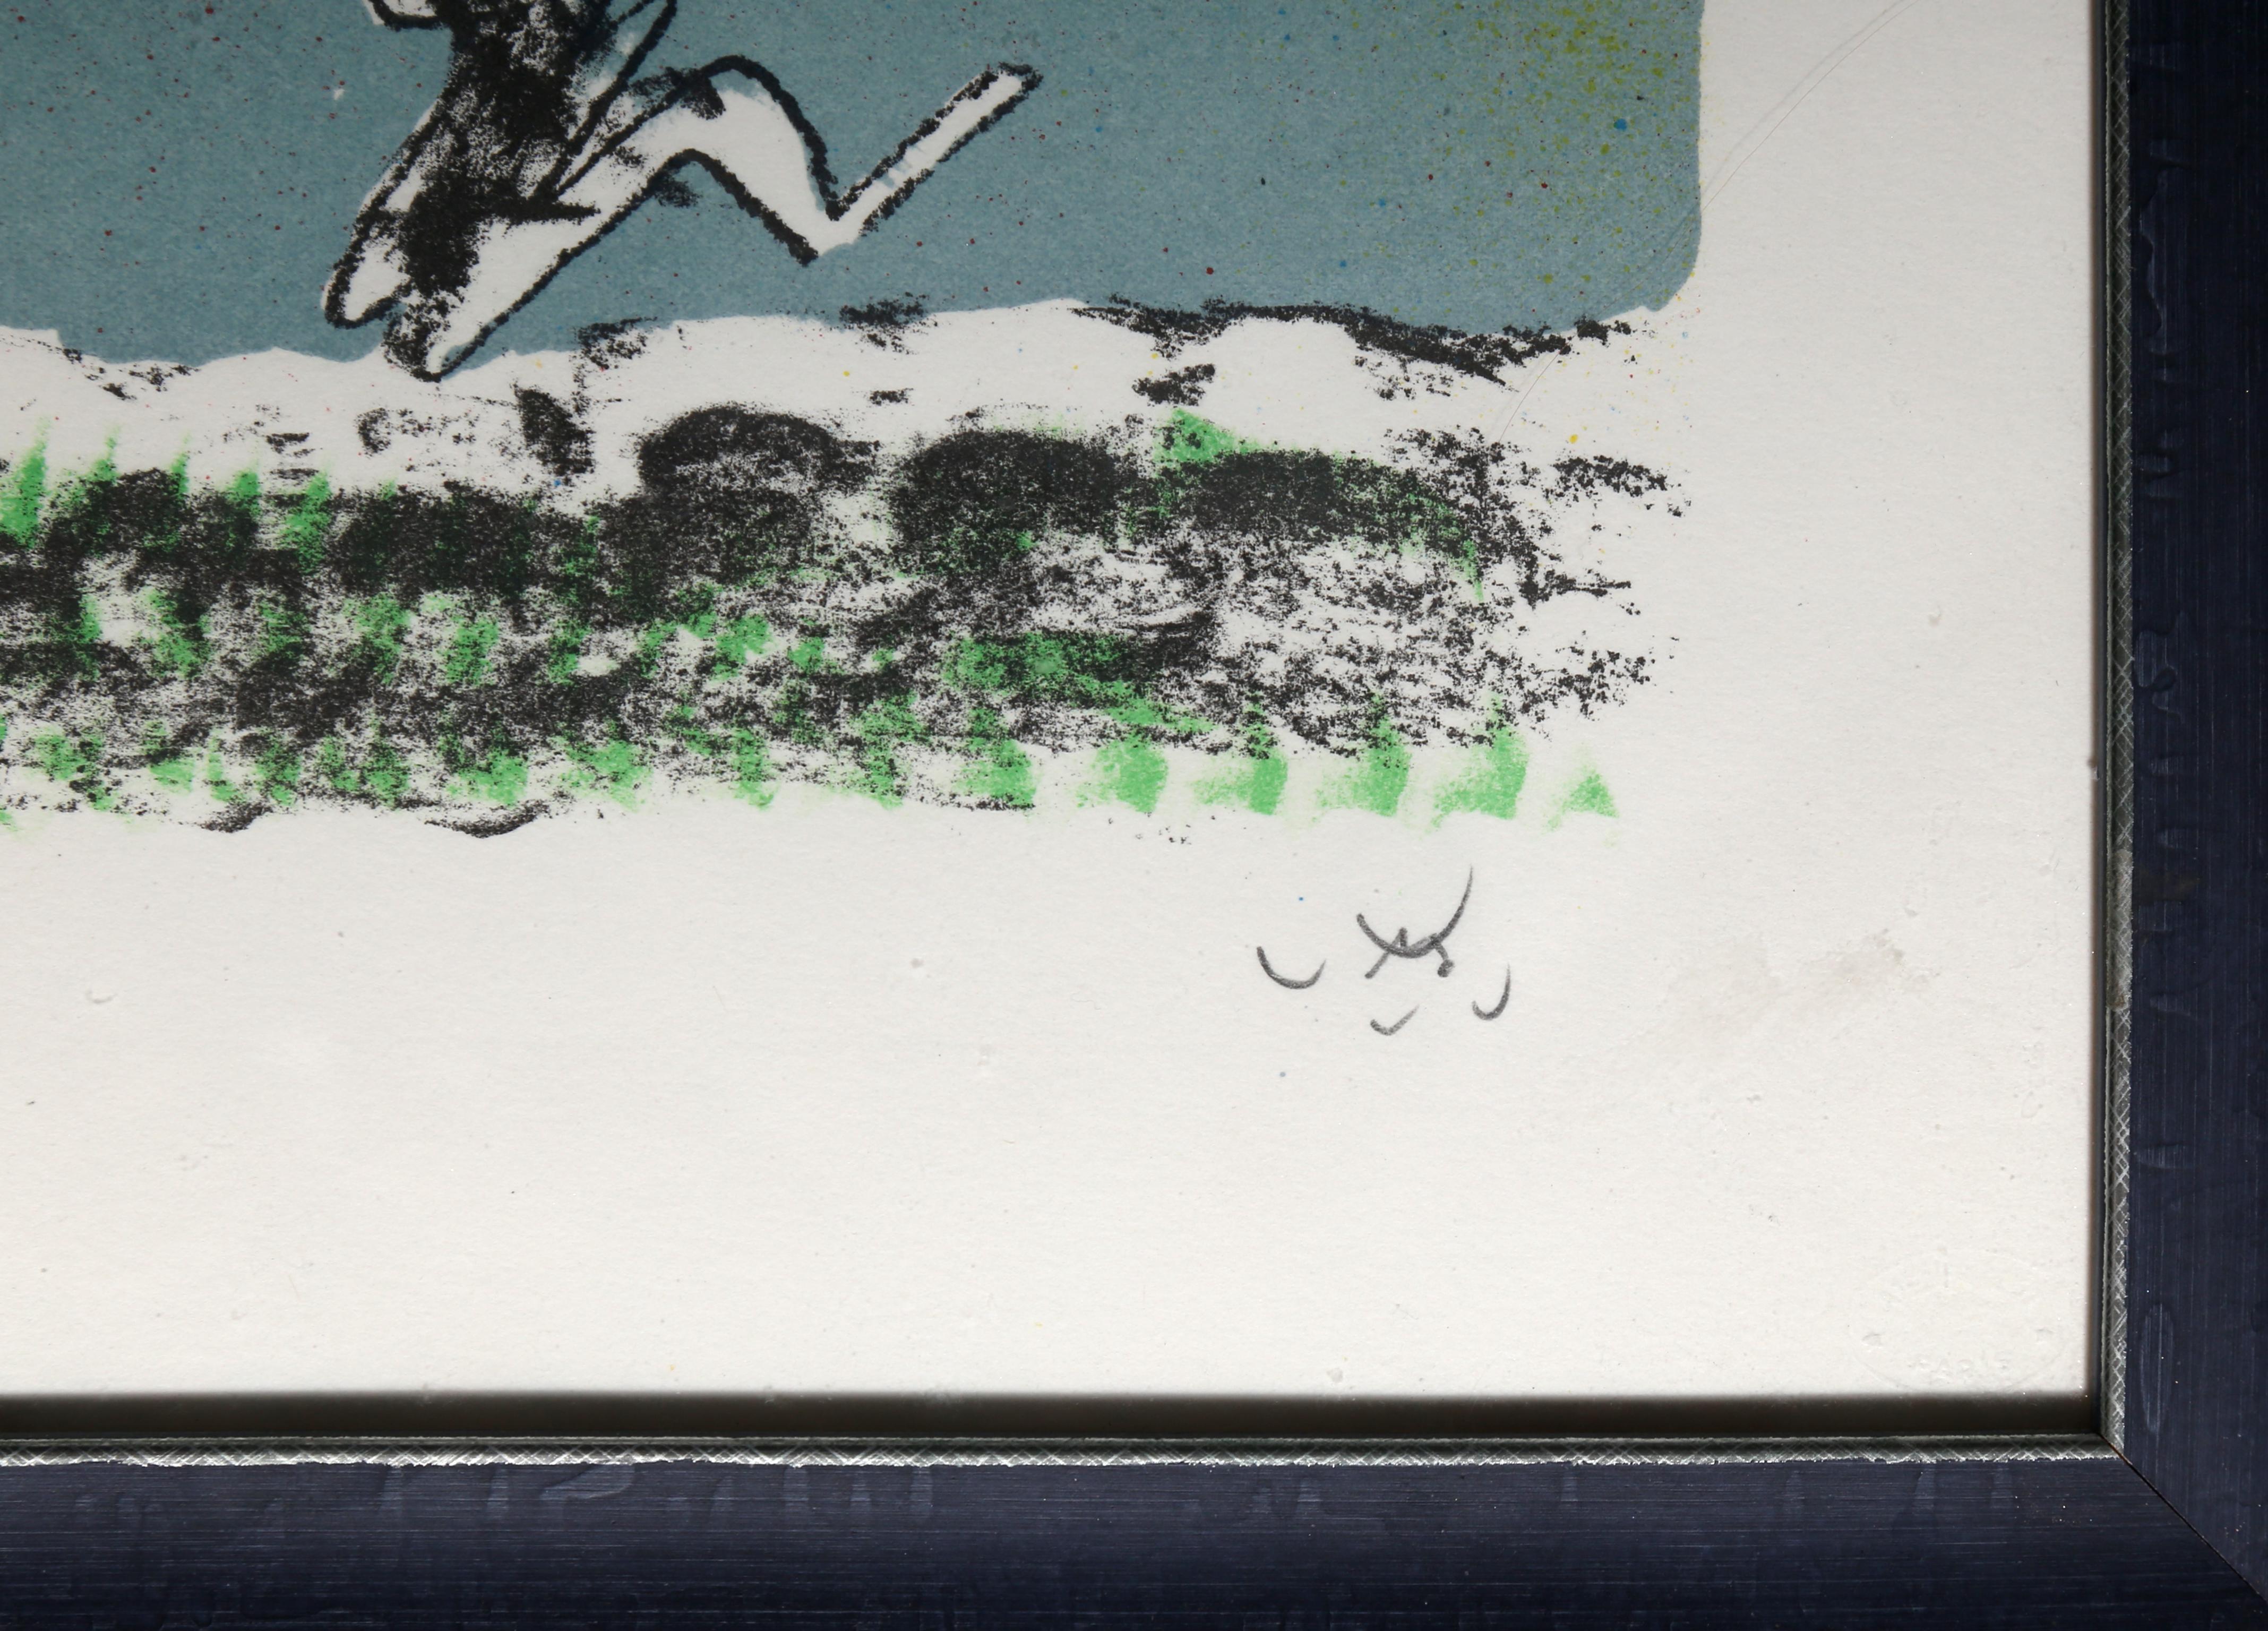 Comique Trippe XVI de Roberto Matta, chilien (1911-2002)
Date : 1974
Lithographie, signée et numérotée au crayon
Edition de 56/60
Taille de l'image : 12.25 x 17.25 pouces
Taille : 41,28 x 52,07 cm (16,25 x 20,5 in)
Taille du cadre : 18 x 22.58